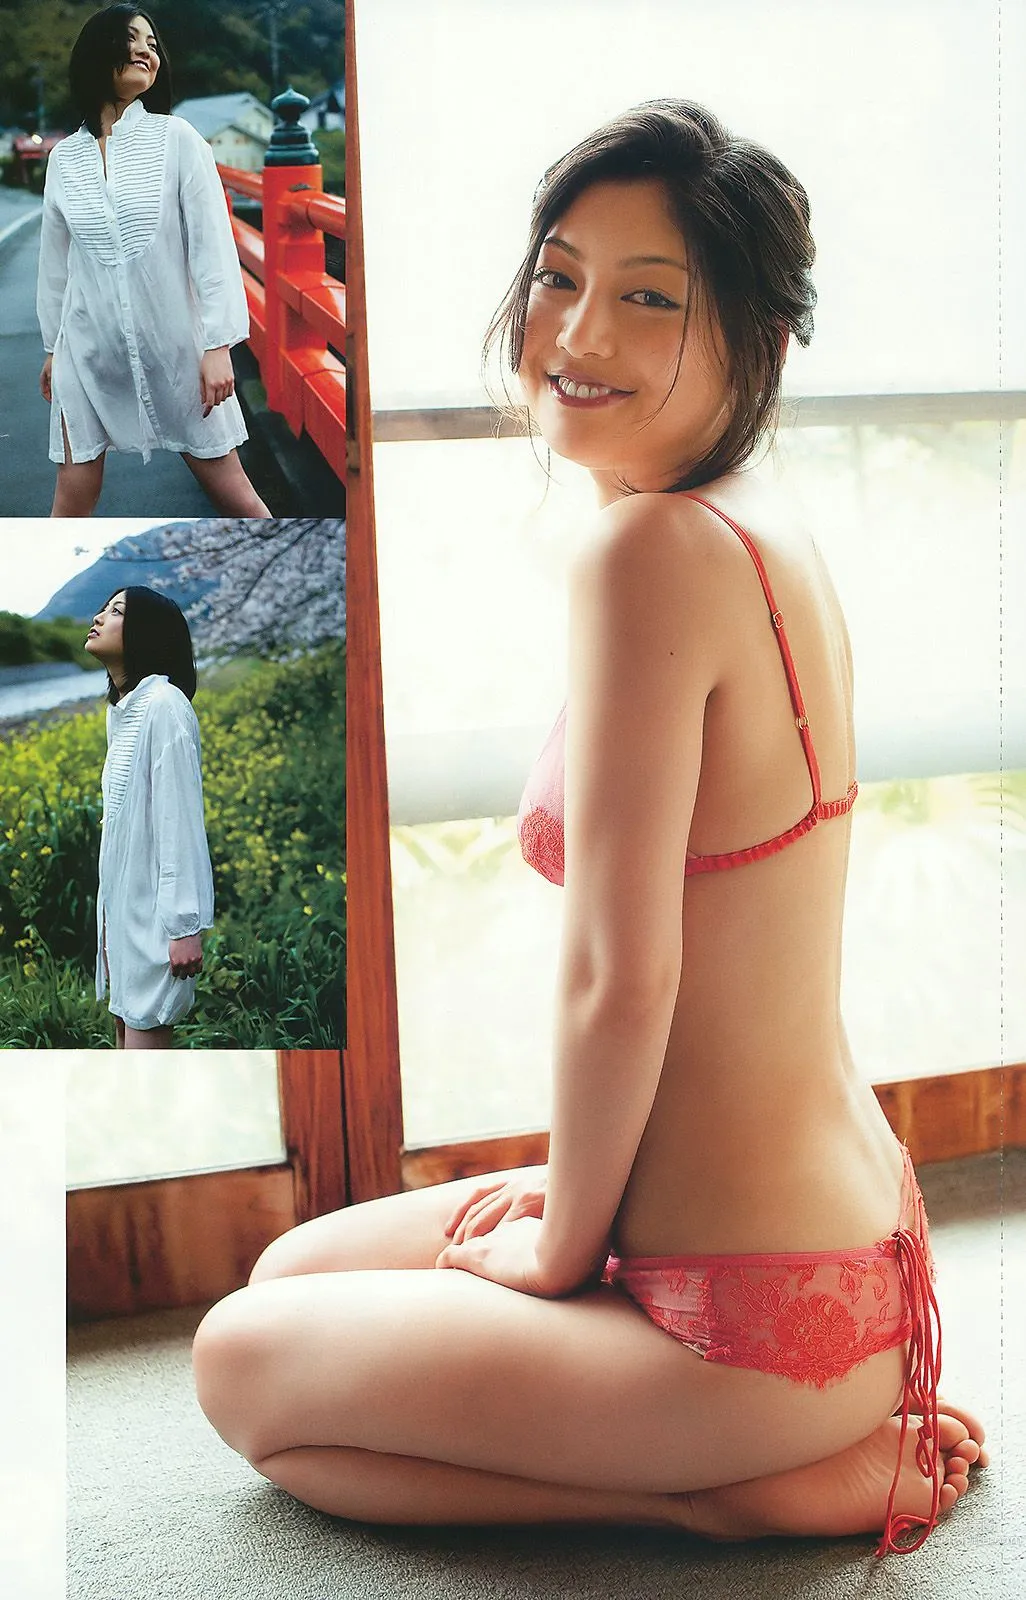 上戸彩 逢沢りな 甲斐まり恵 AKB48 白石美帆 後藤理沙 [Weekly Playboy] 2010年No.19-20 写真杂志37